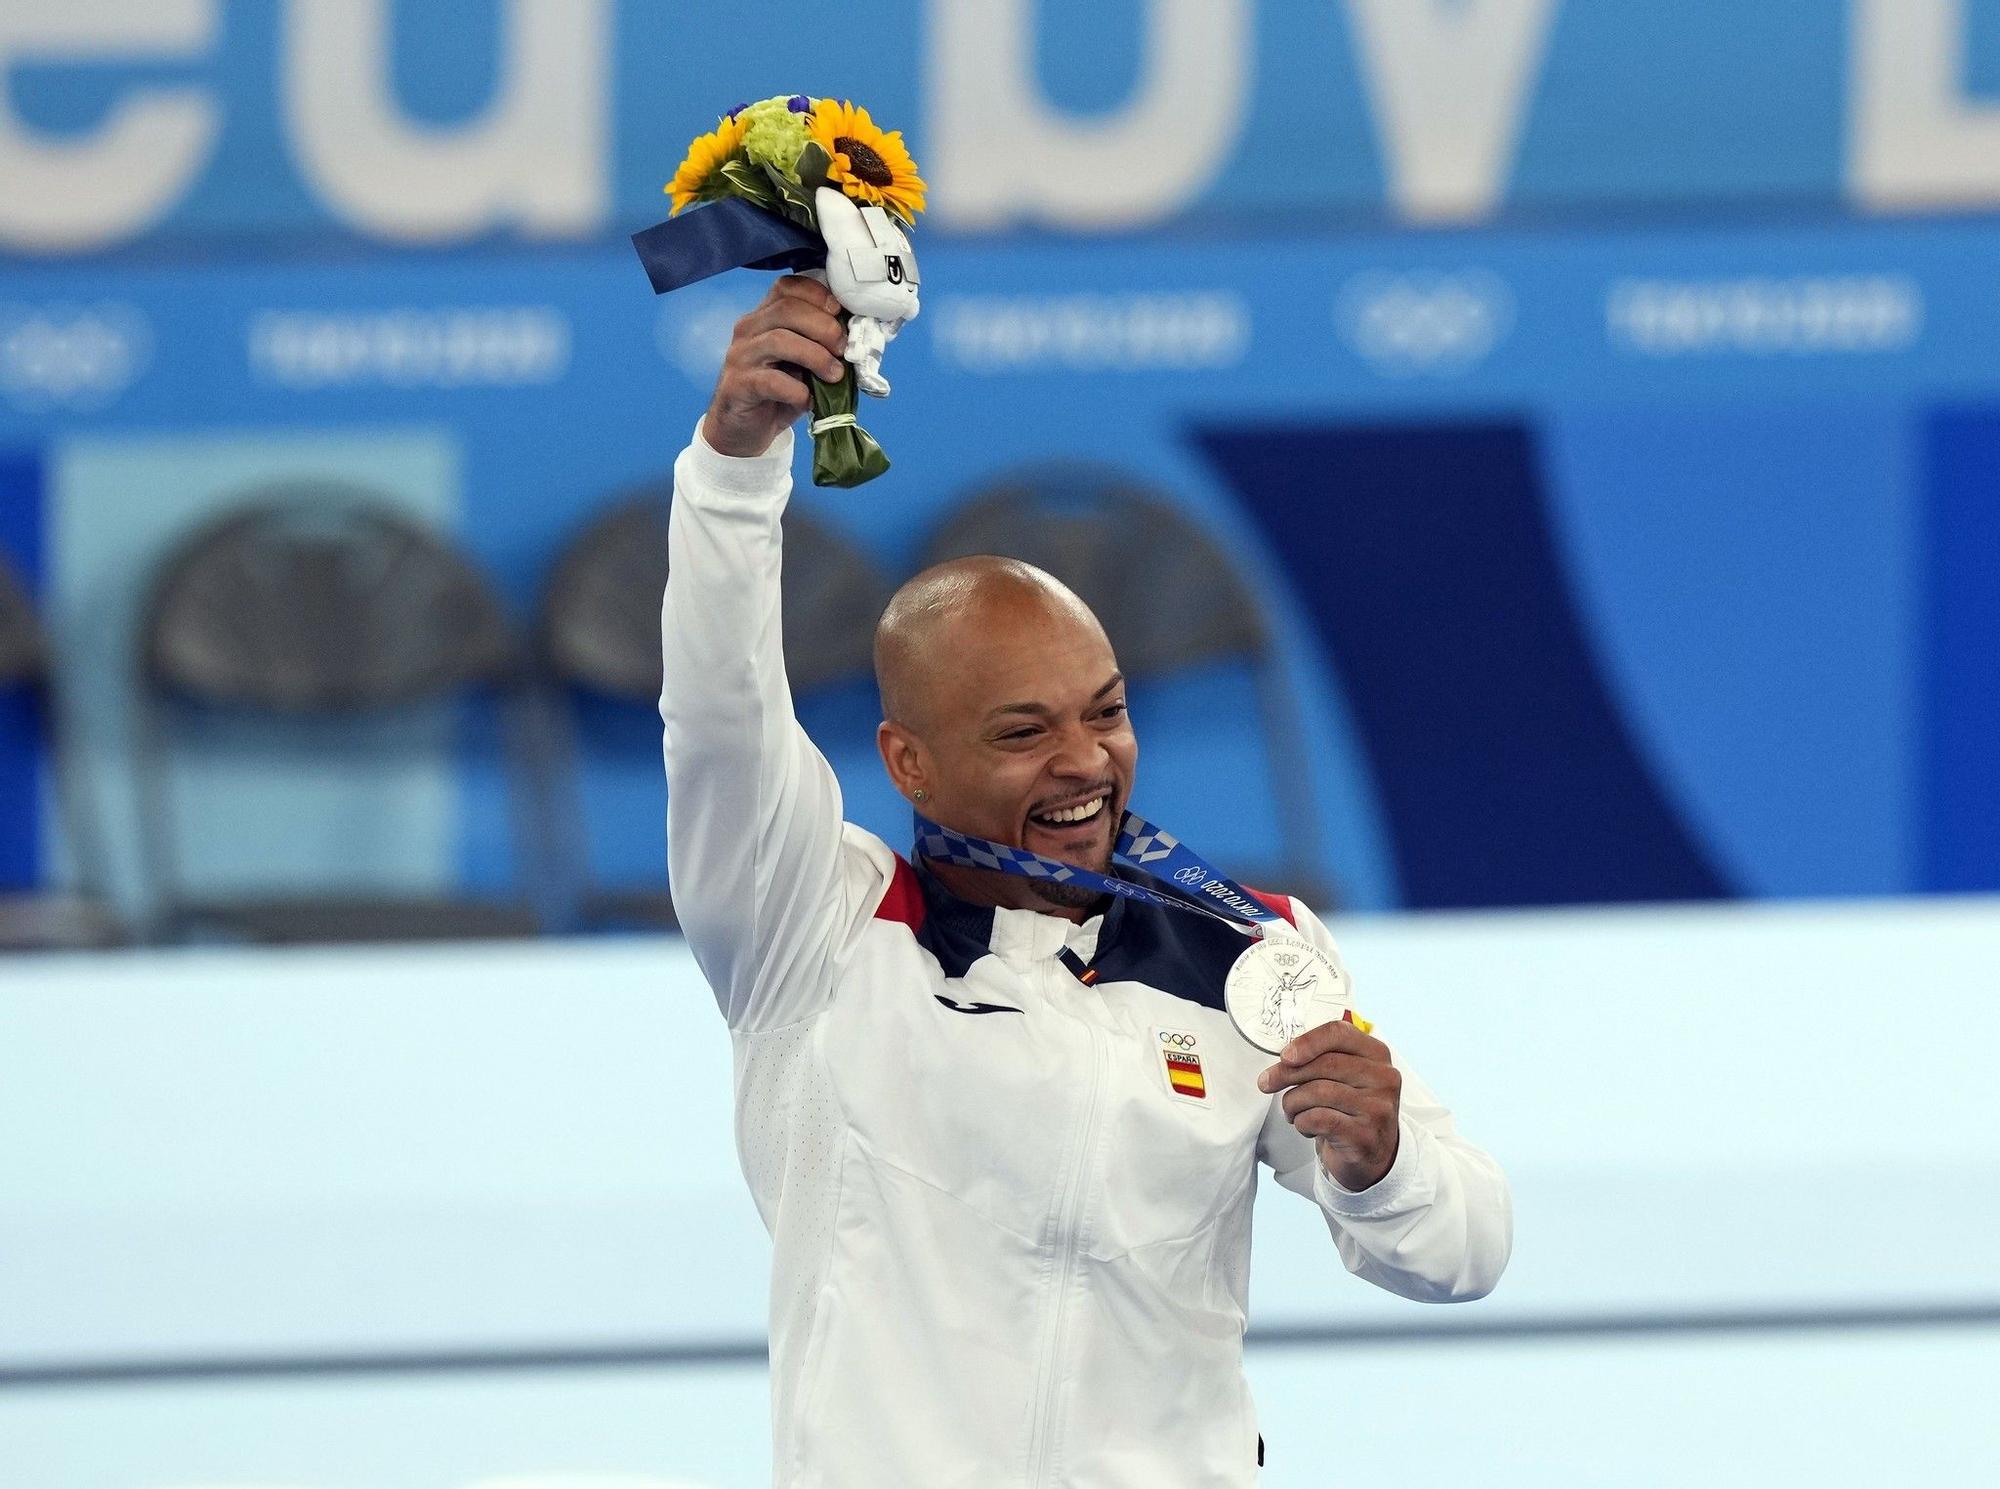 El gimnasta español Rayderley Zapata con la medalla conseguida en la final de suelo